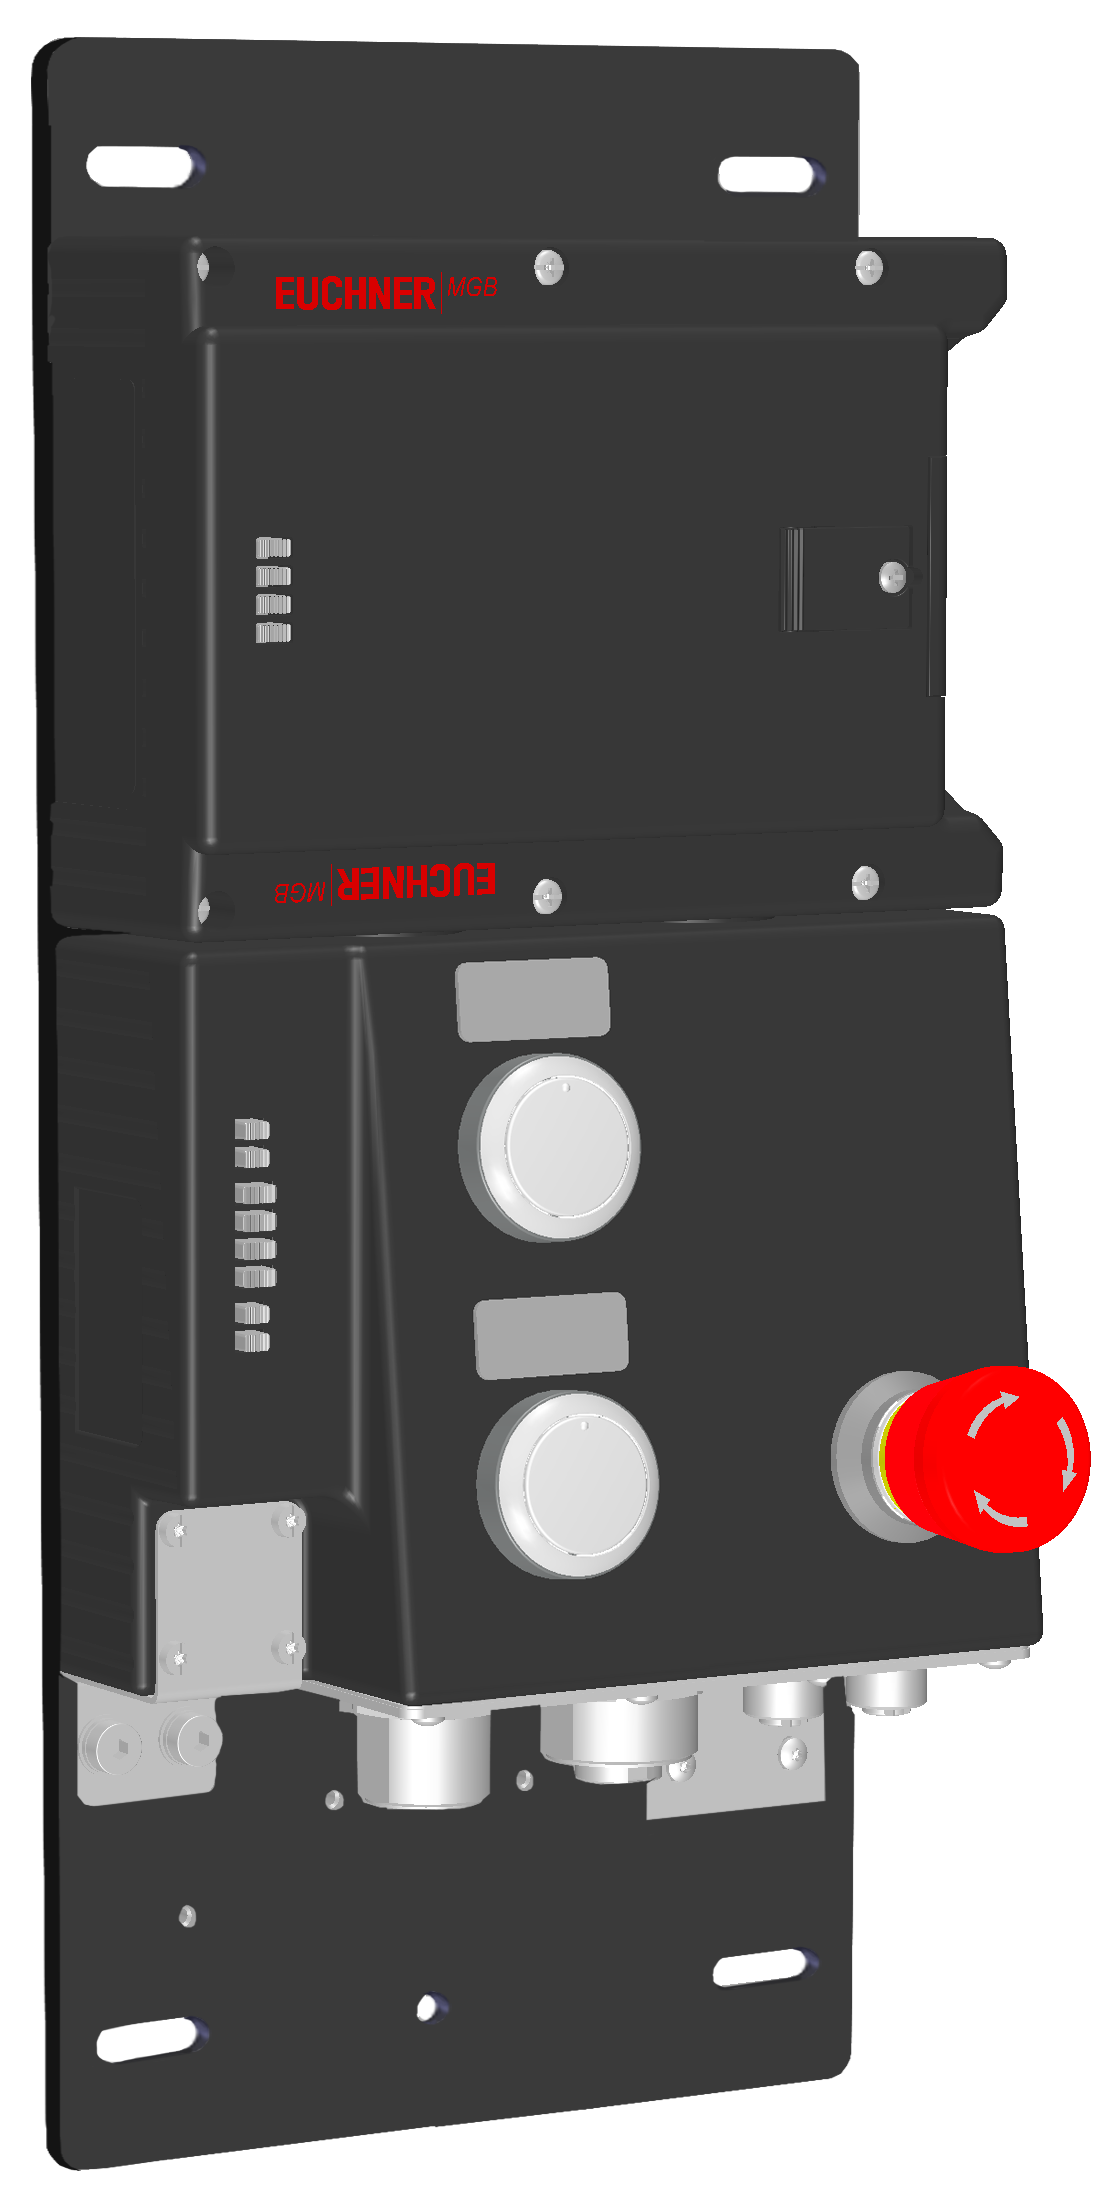 Vyhodnocovací moduly s jištěním ochranného krytu MGB-L2B-PNA-R-121859  (Obj. č. 121859)